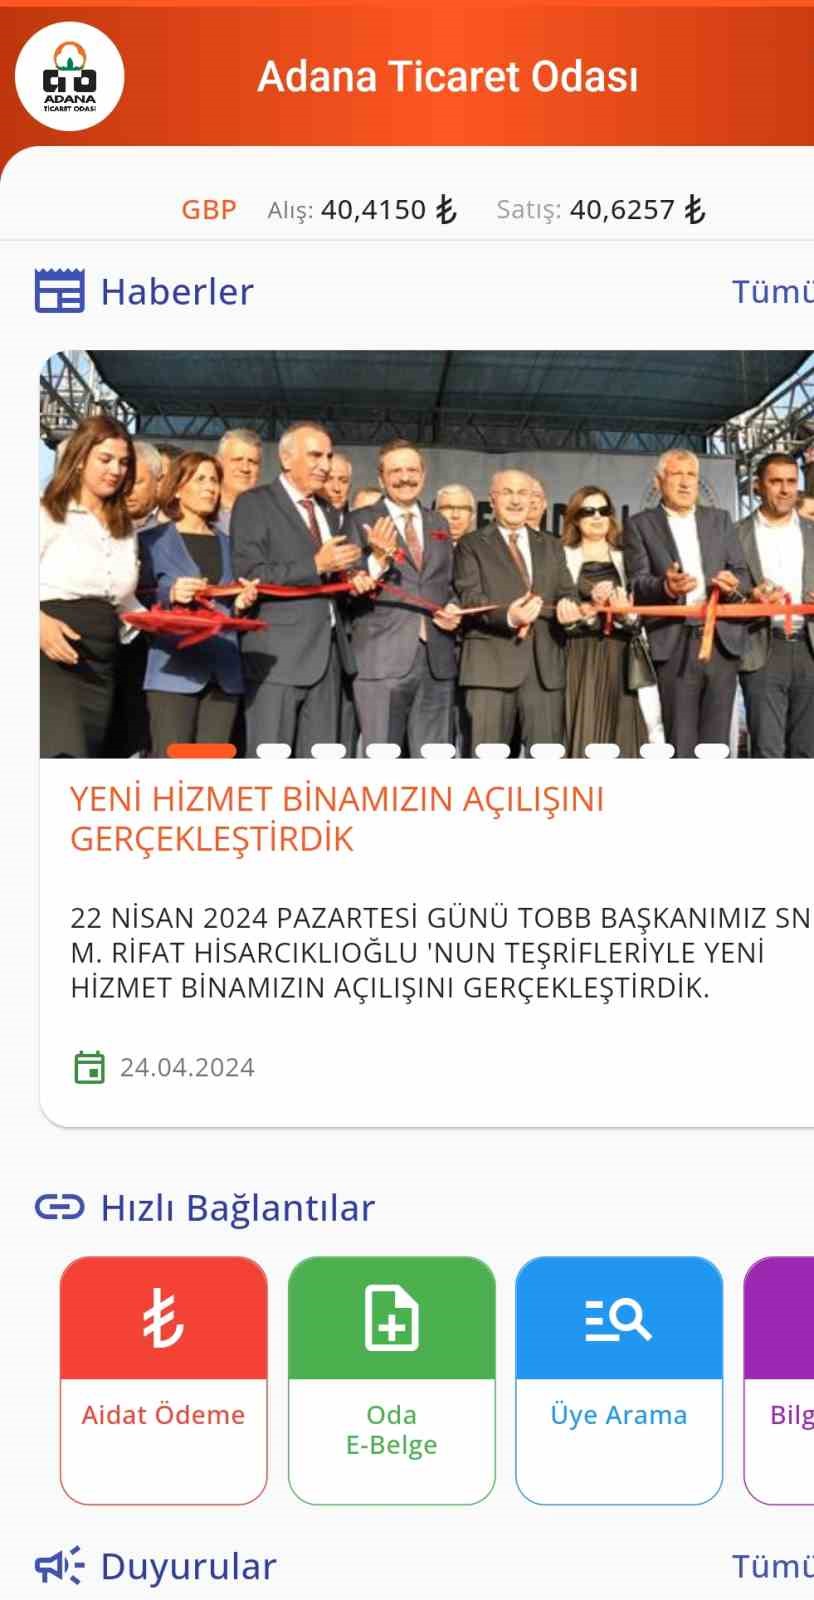 Adana Ticaret Odası Mobil Uygulama hayata geçirildi
